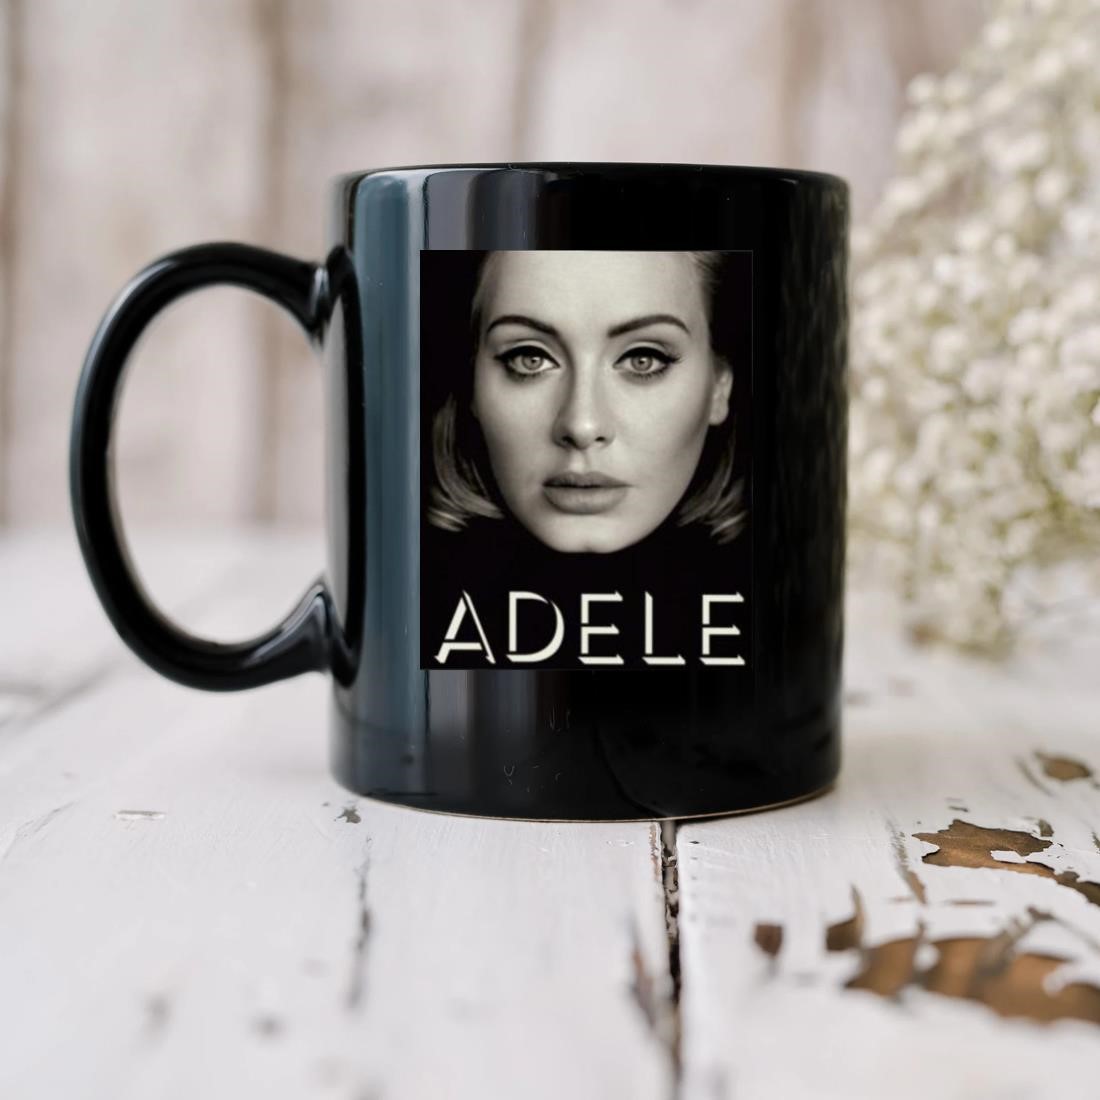 Adele Photo Mug biu.jpg